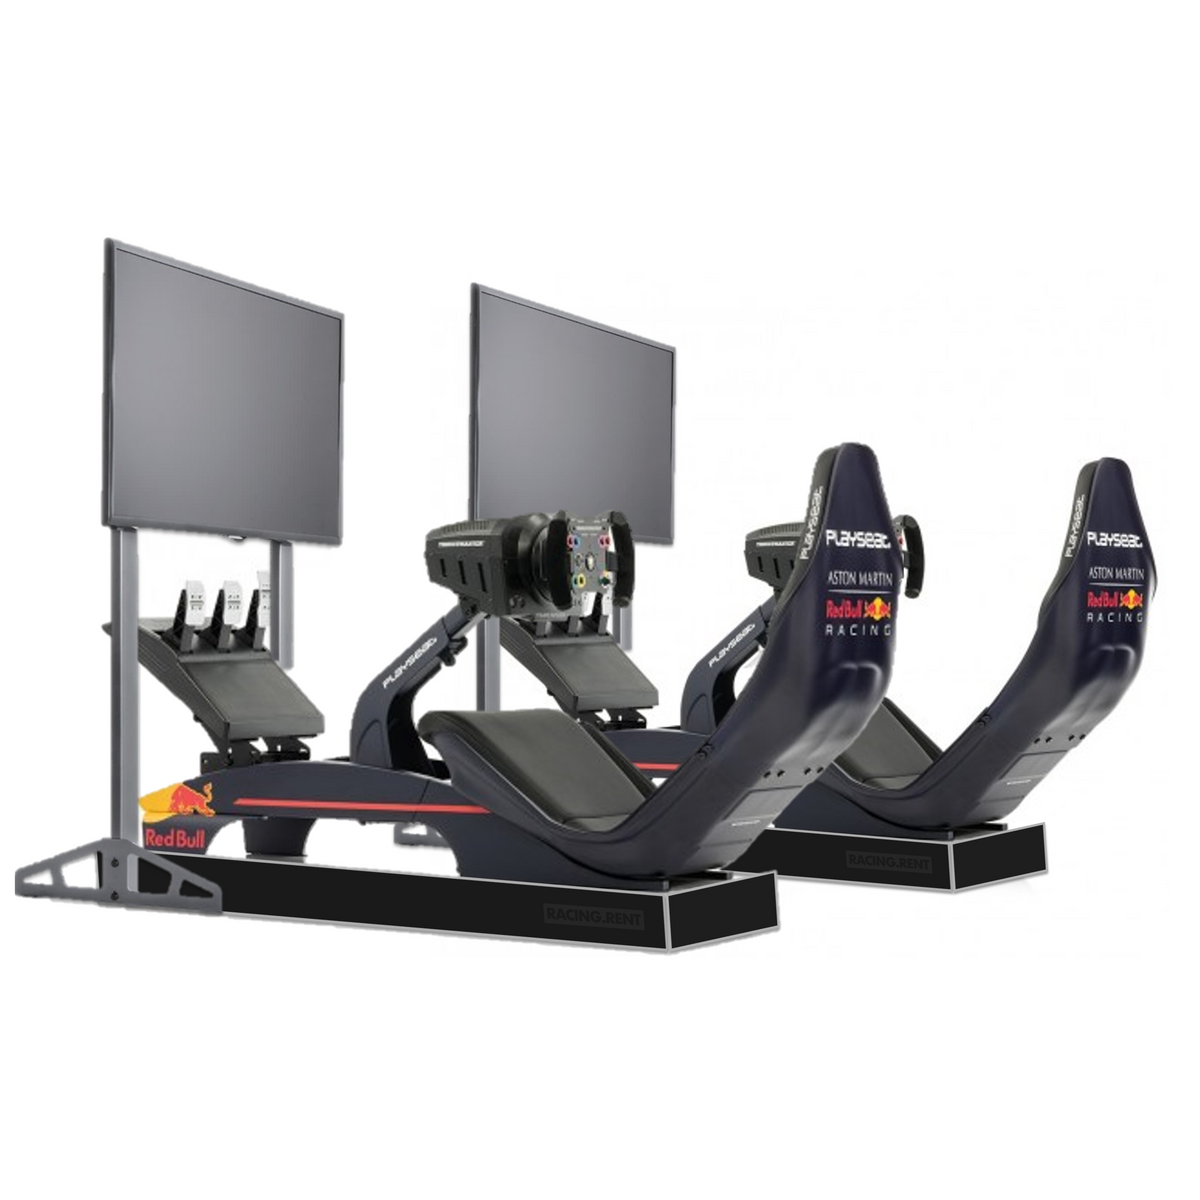 2x Red Bull Racing, playseat simulator –